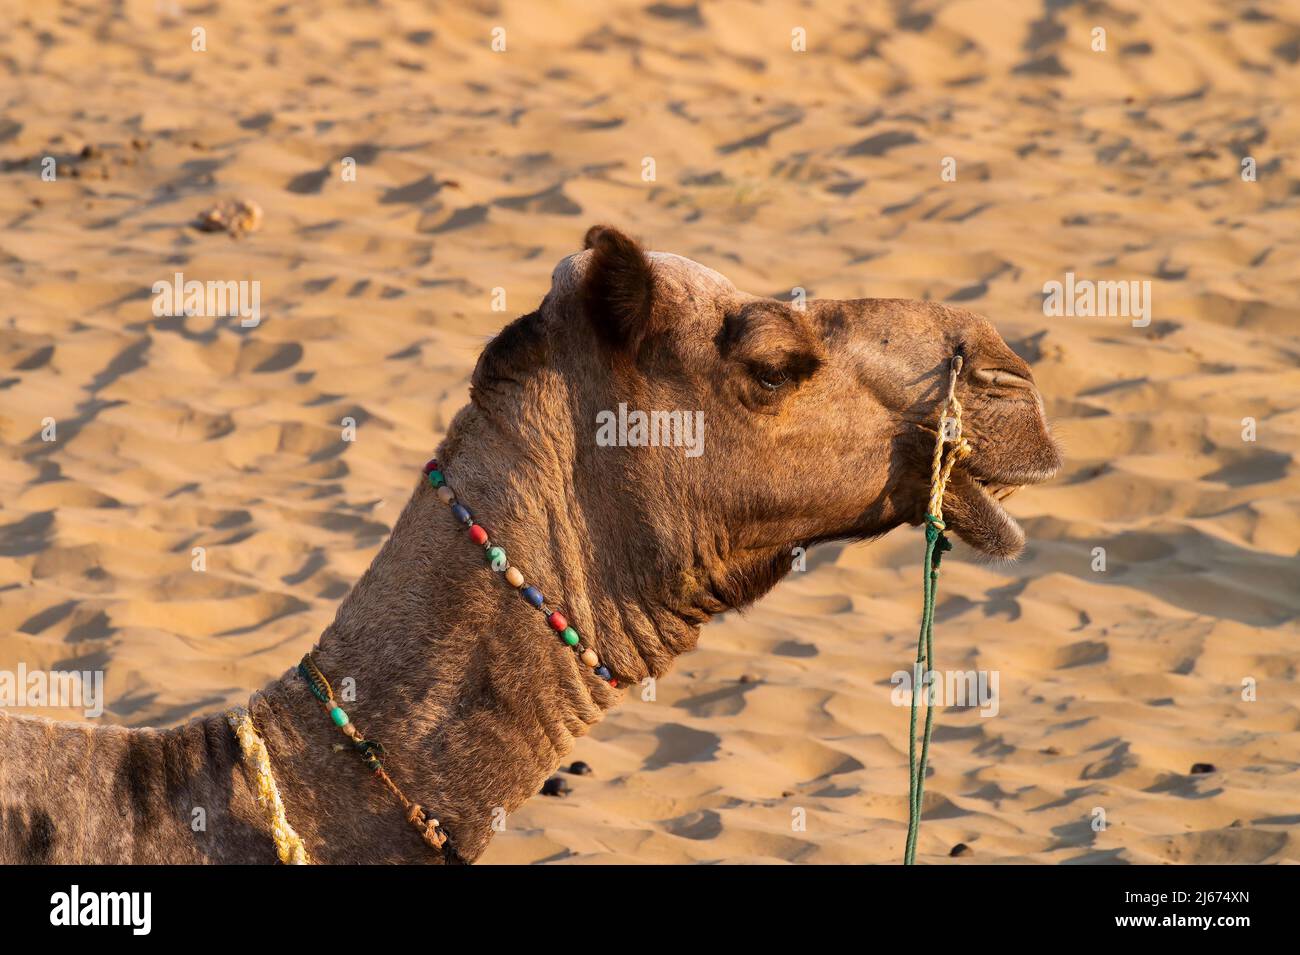 Ritratto di un cammello, faccia mentre aspetta i turisti per il giro del cammello al deserto di Thar, Rajasthan, India. Cammelli, Camelus dromedarius, sono un grande deserto Foto Stock